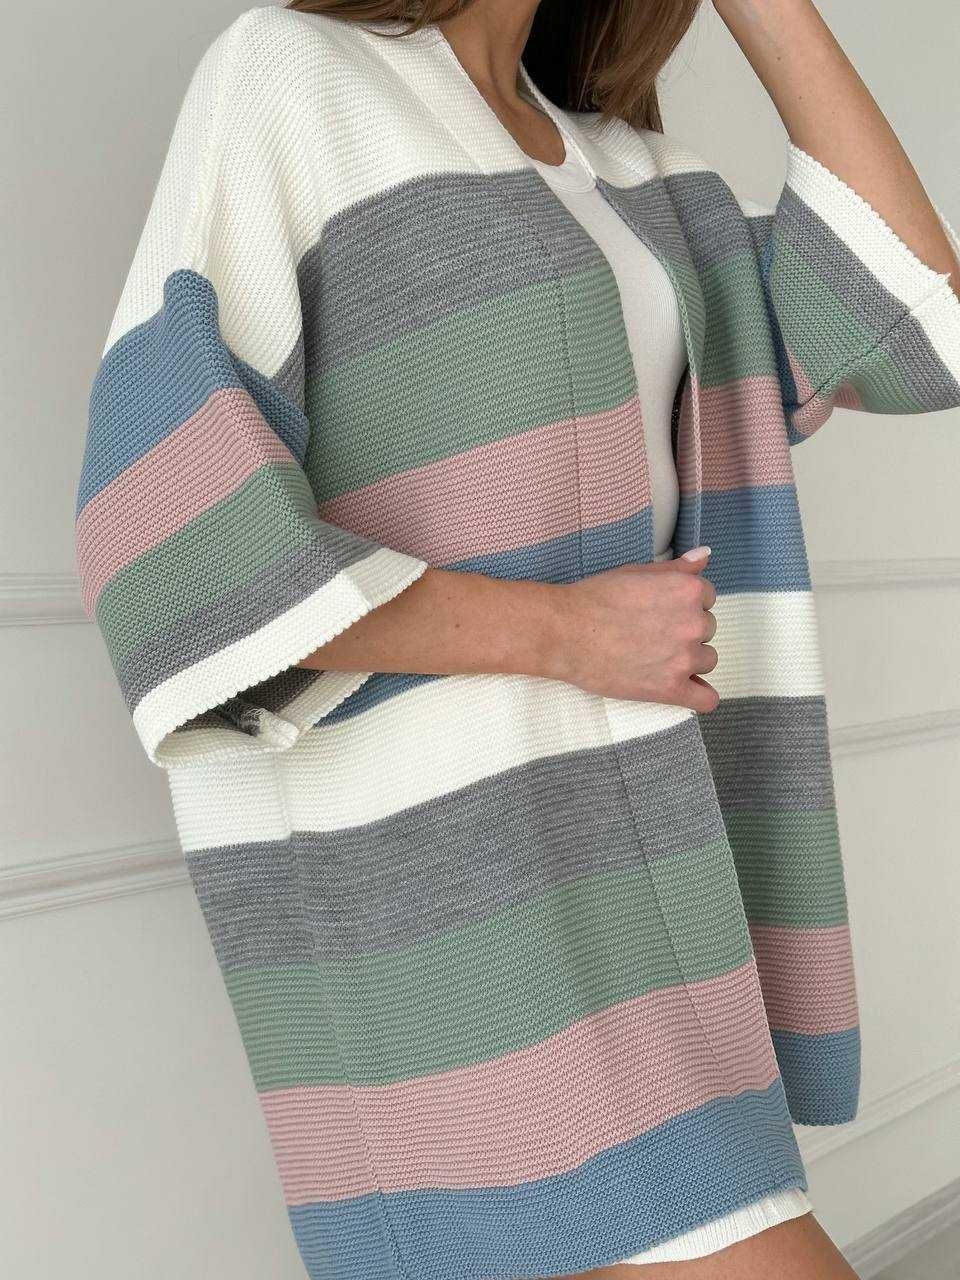 Кардиган женскиий длинный свитер пончо